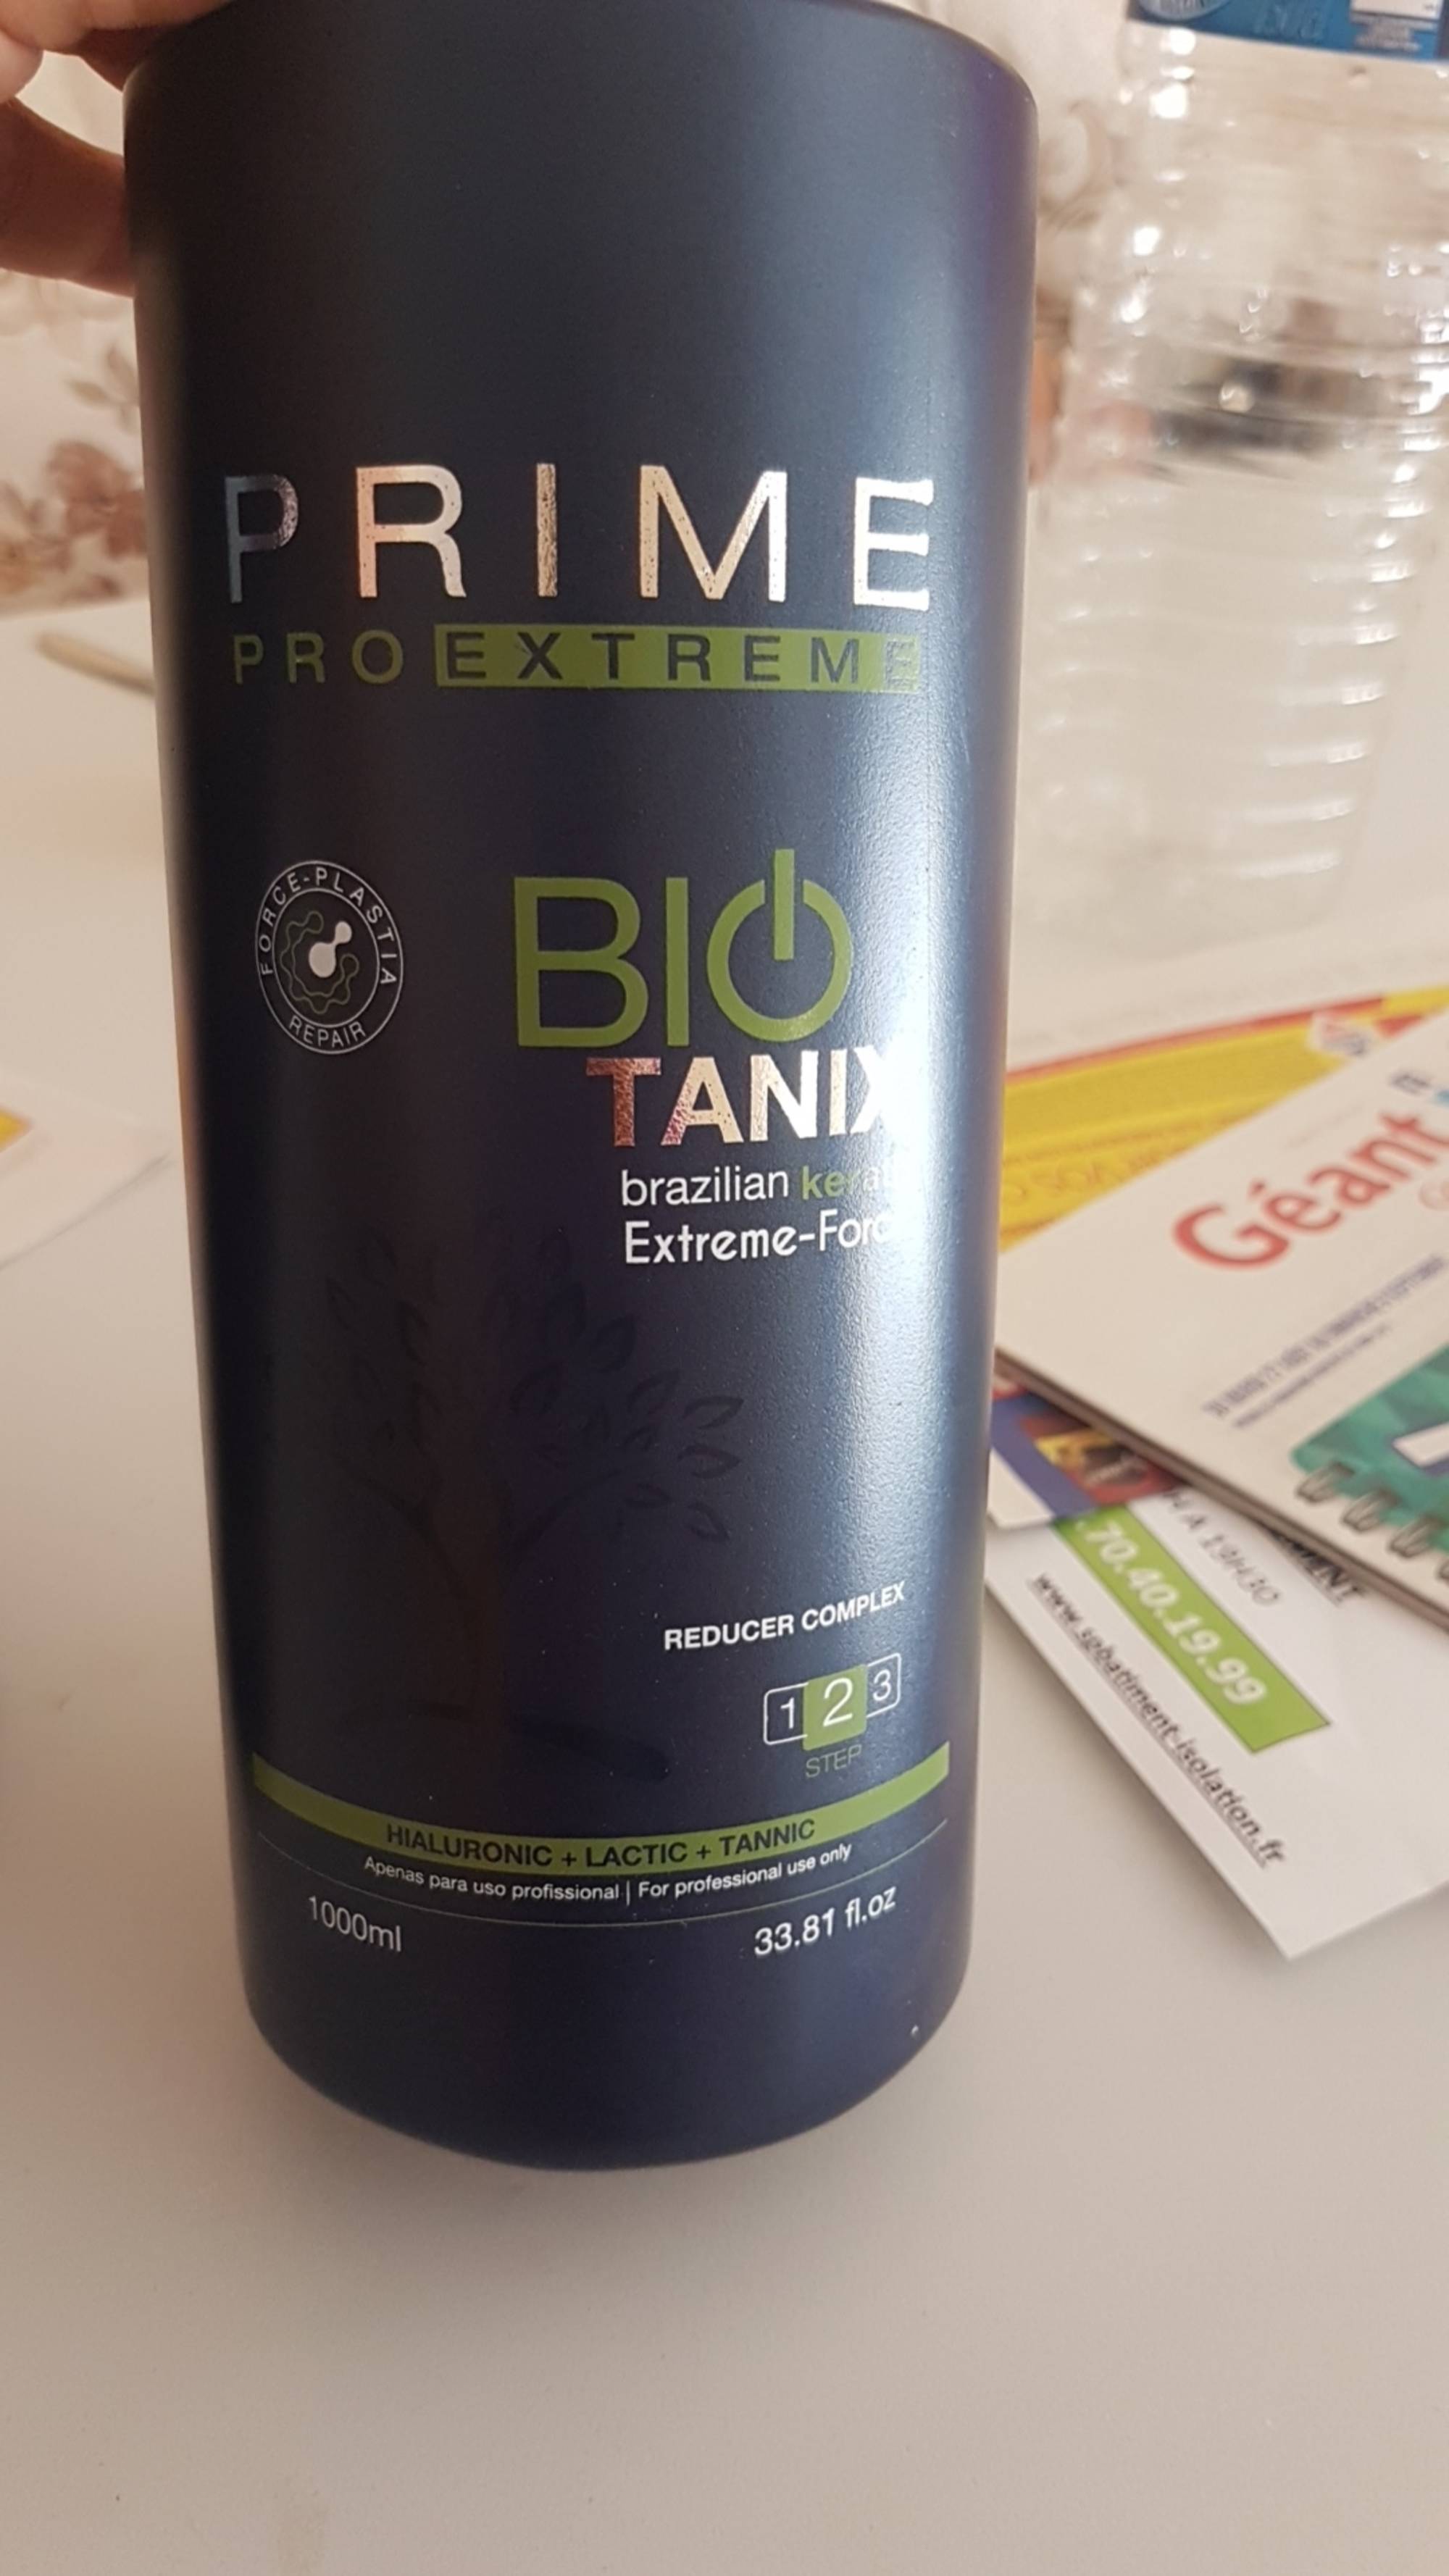 PRIME PRO EXTREME - Bio tanix - Brazilian keratin